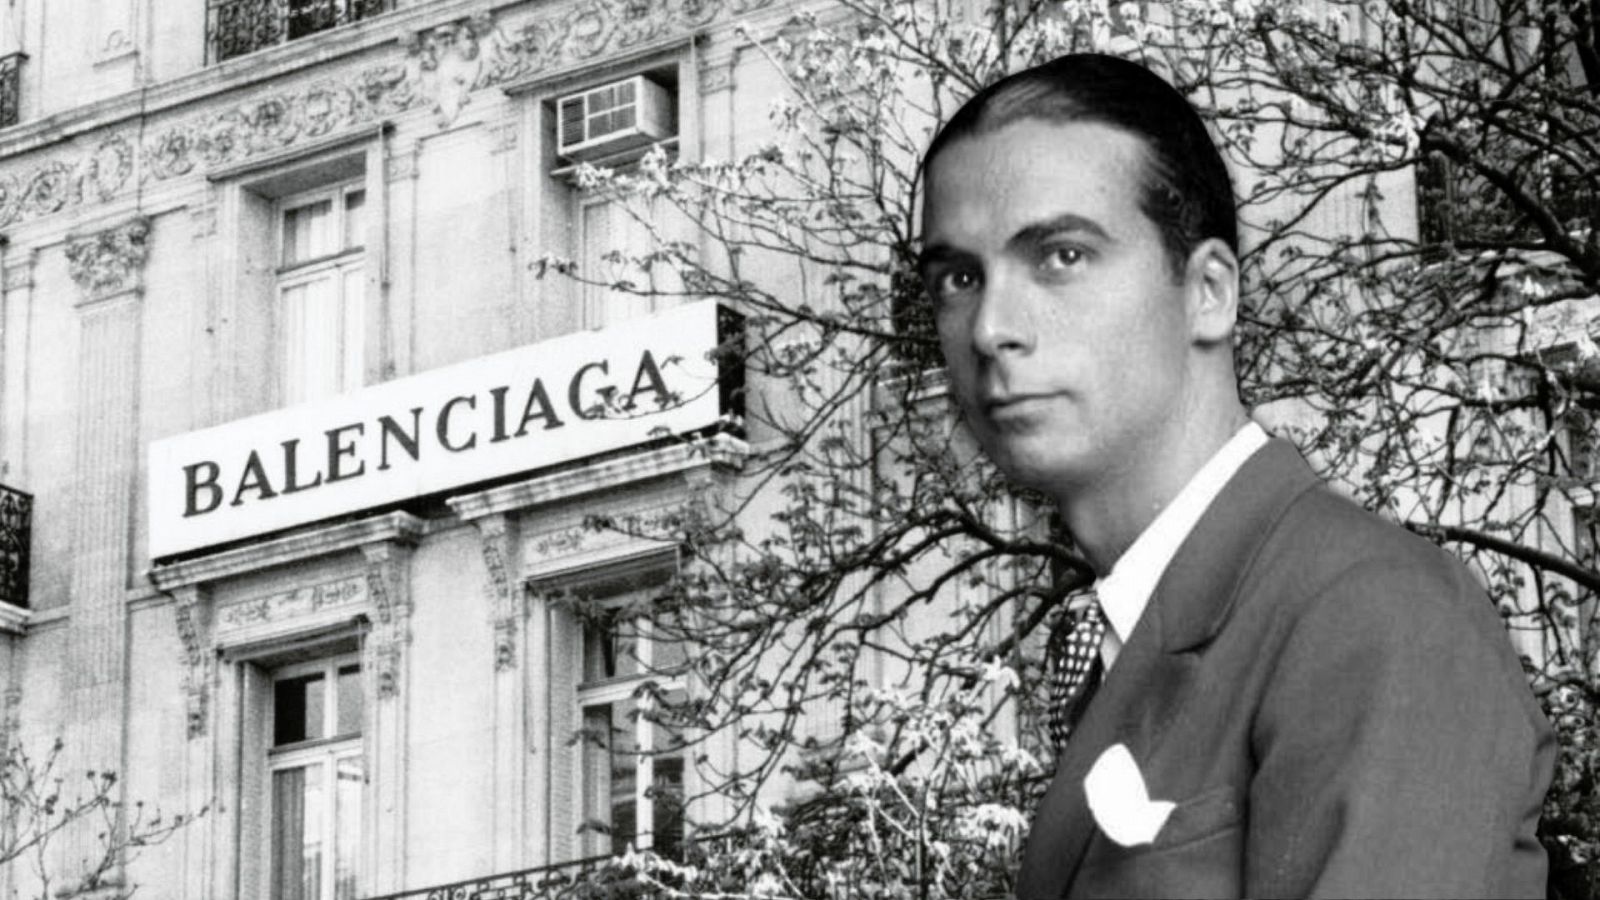 Cristóbal Balenciaga nació el 21 de enero de 1895